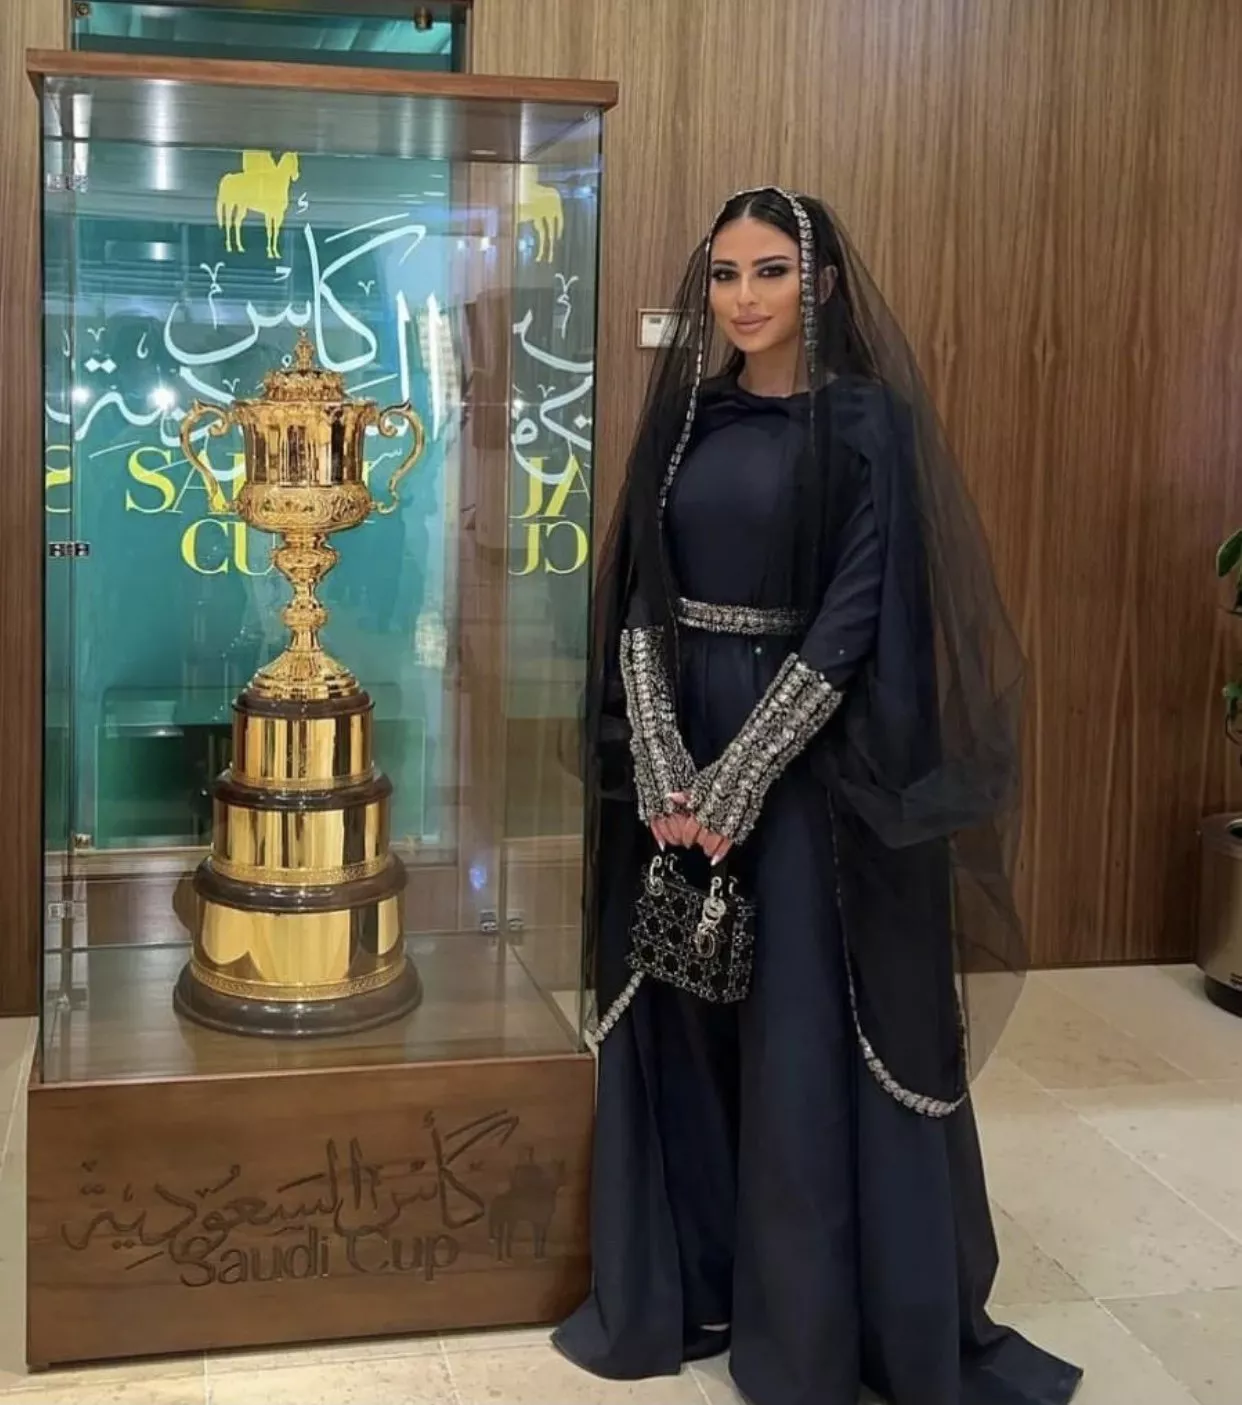 صور شخصيات ملكية وبلوغرز، يتألّقن بالأزياء التراثية في كأس السعودية لسباق الخيل 2022